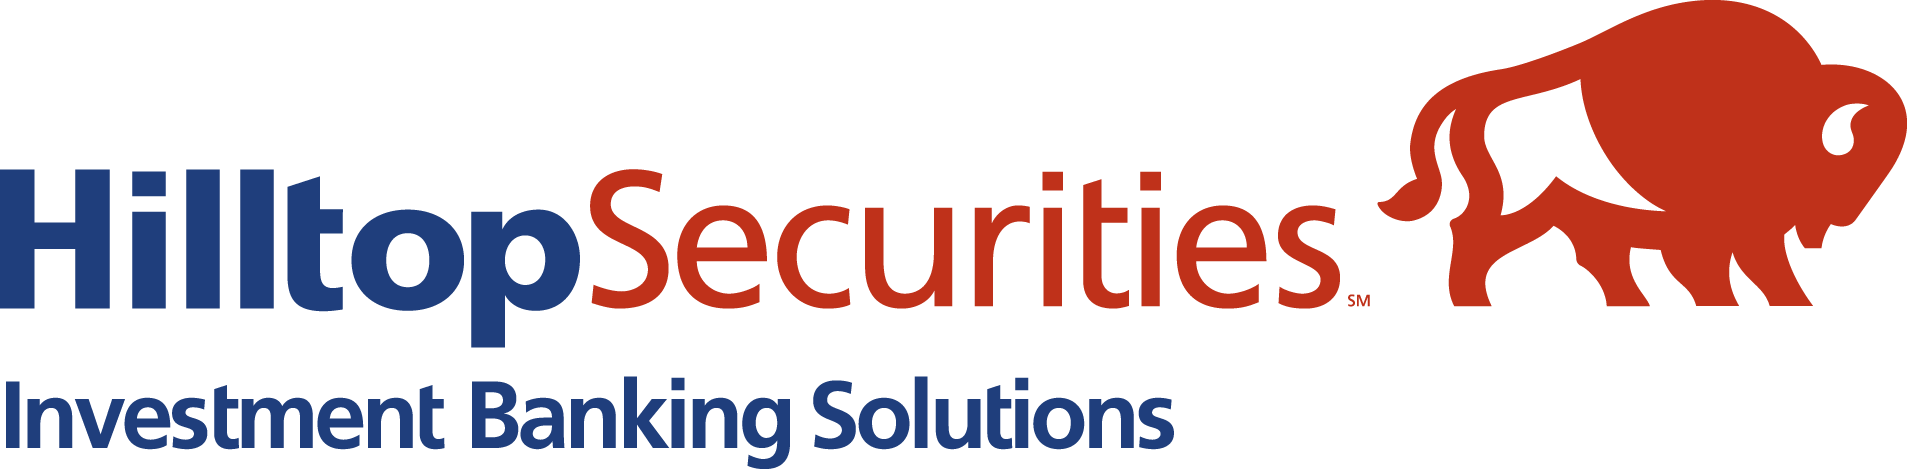 Hilltop Securities Inc. logo